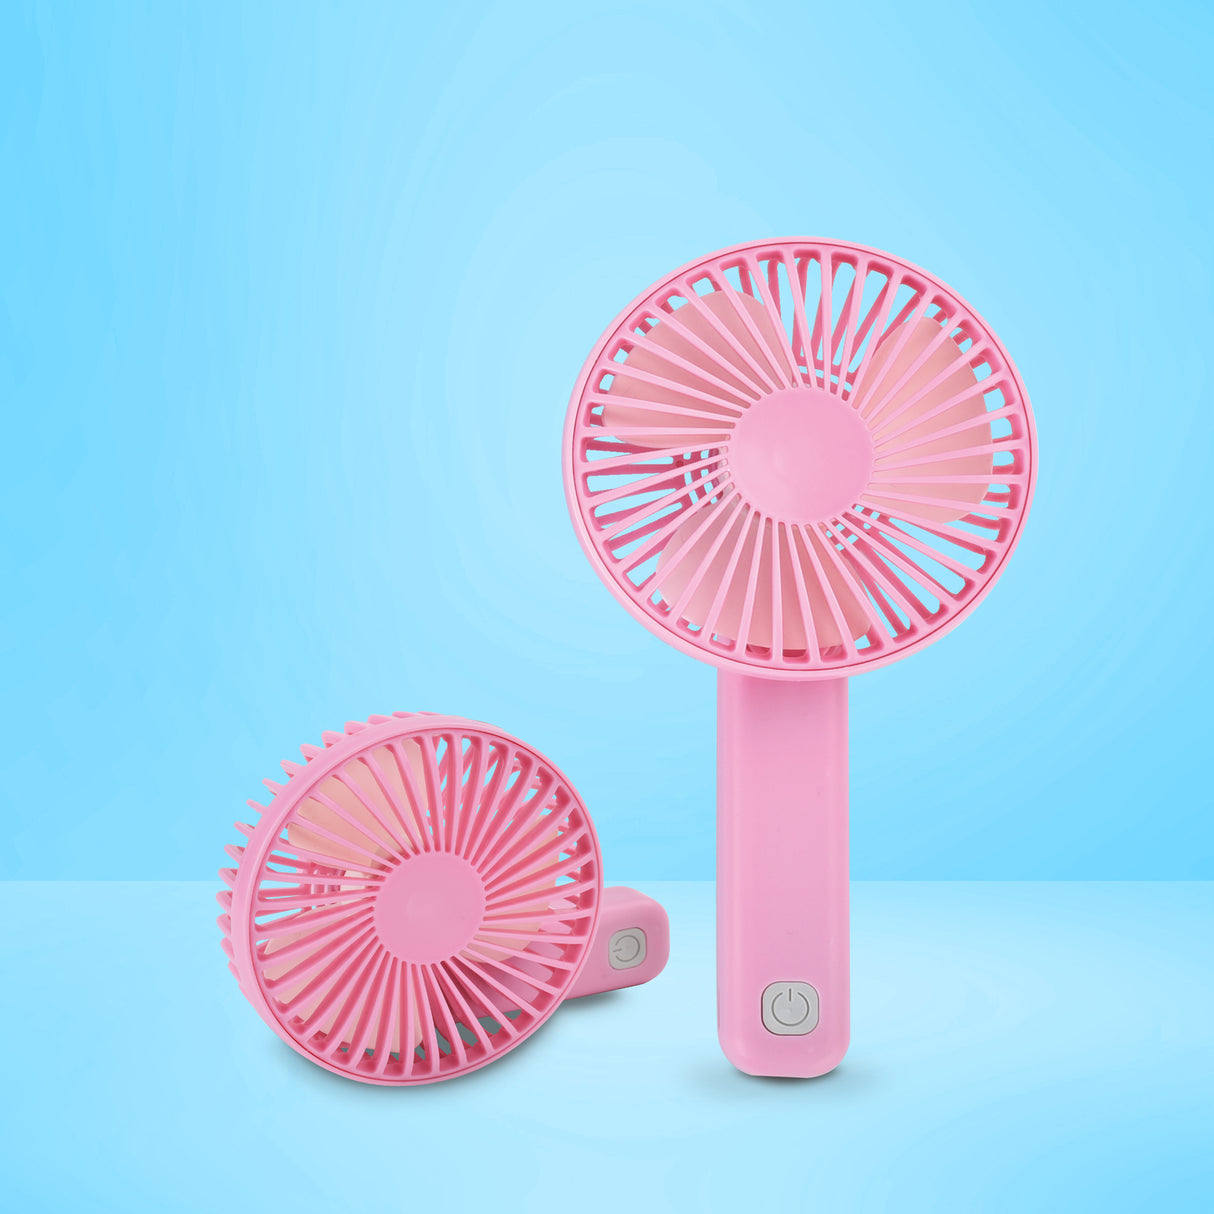 USB Akku Ventilator in pink - Kühle Luft jetzt kaufen und klicken! –